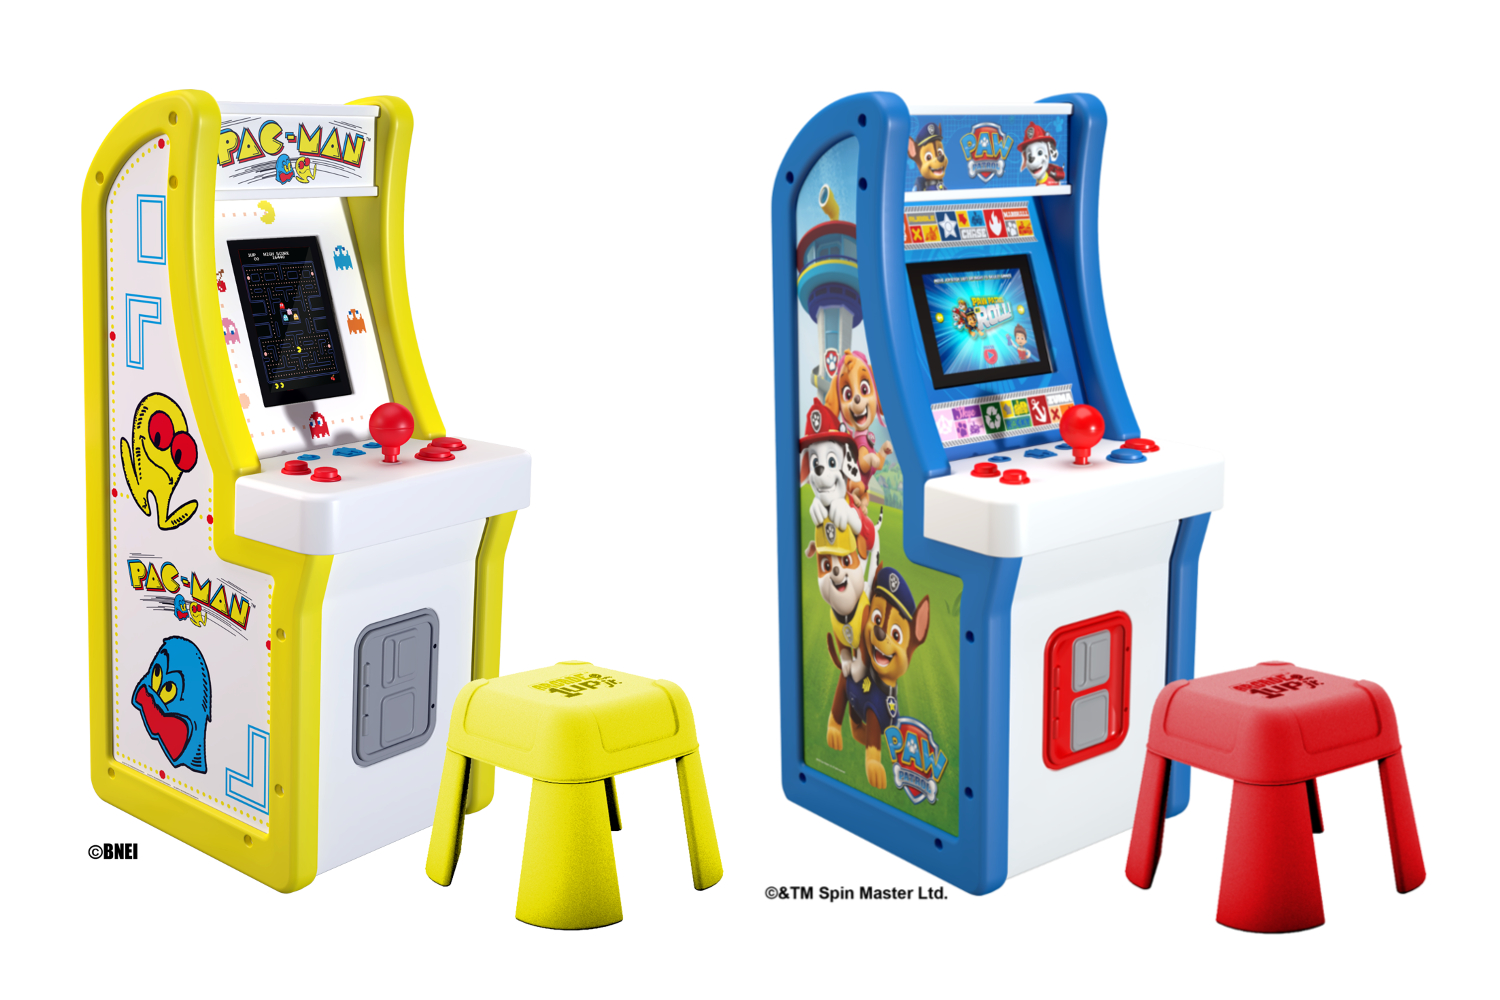 Estas pequeñas máquinas arcade son ideales para los Digital Trends Español